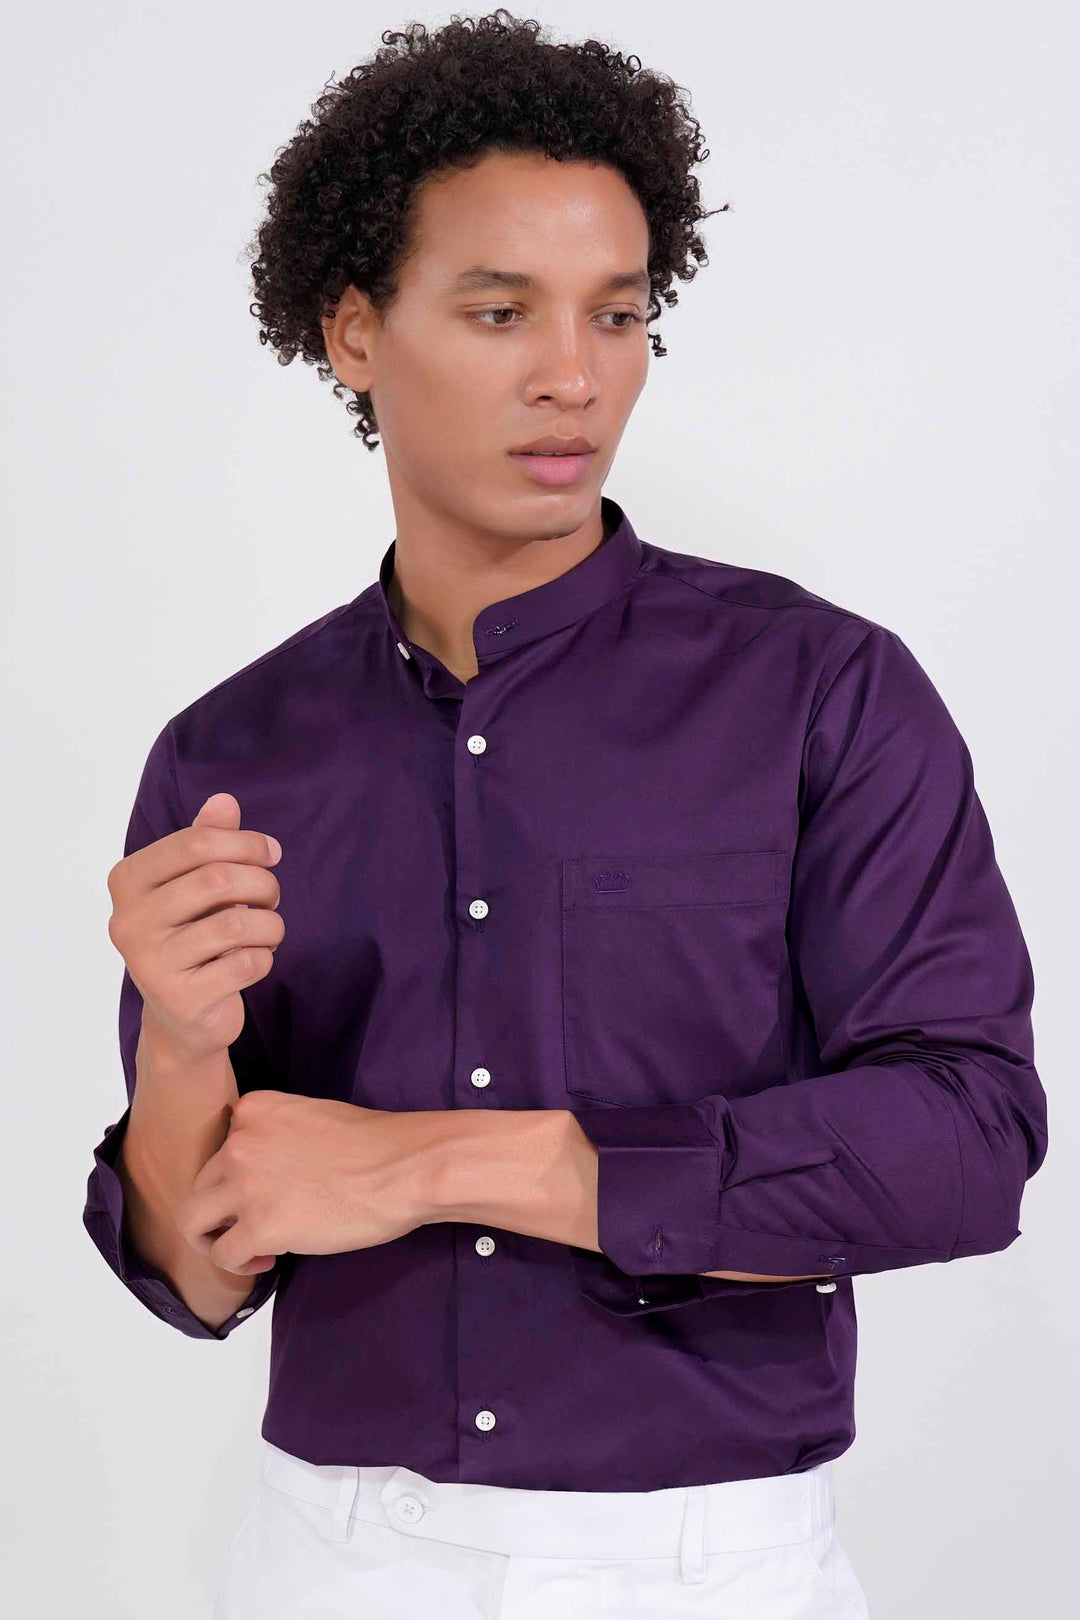 Purple Shirt Combination Pant | Purple Shirt Pant | Purple Shirt Matching  Pants - YouTube